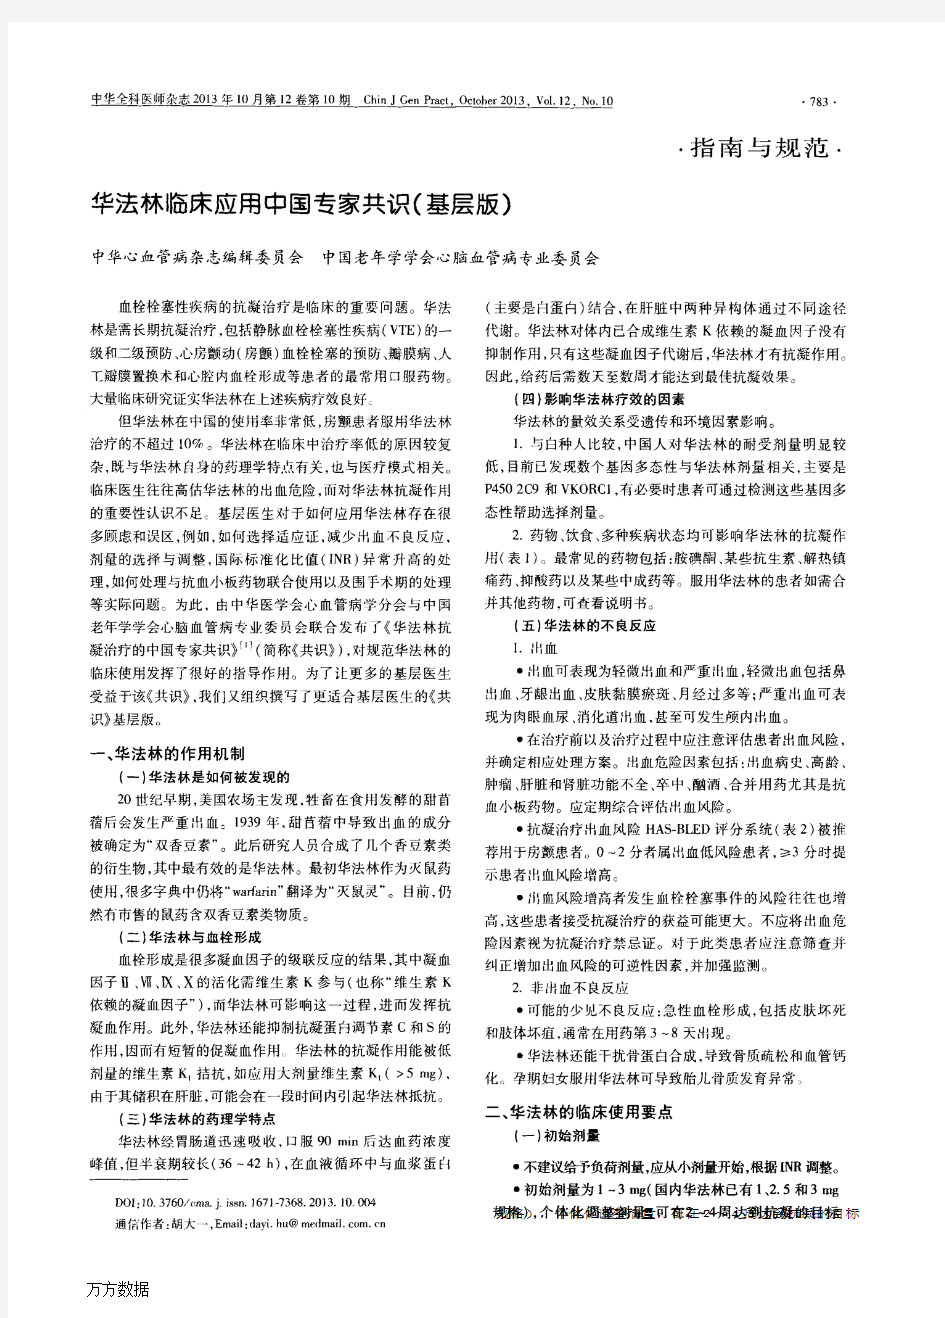 华法林临床应用中国专家共识(基层版)